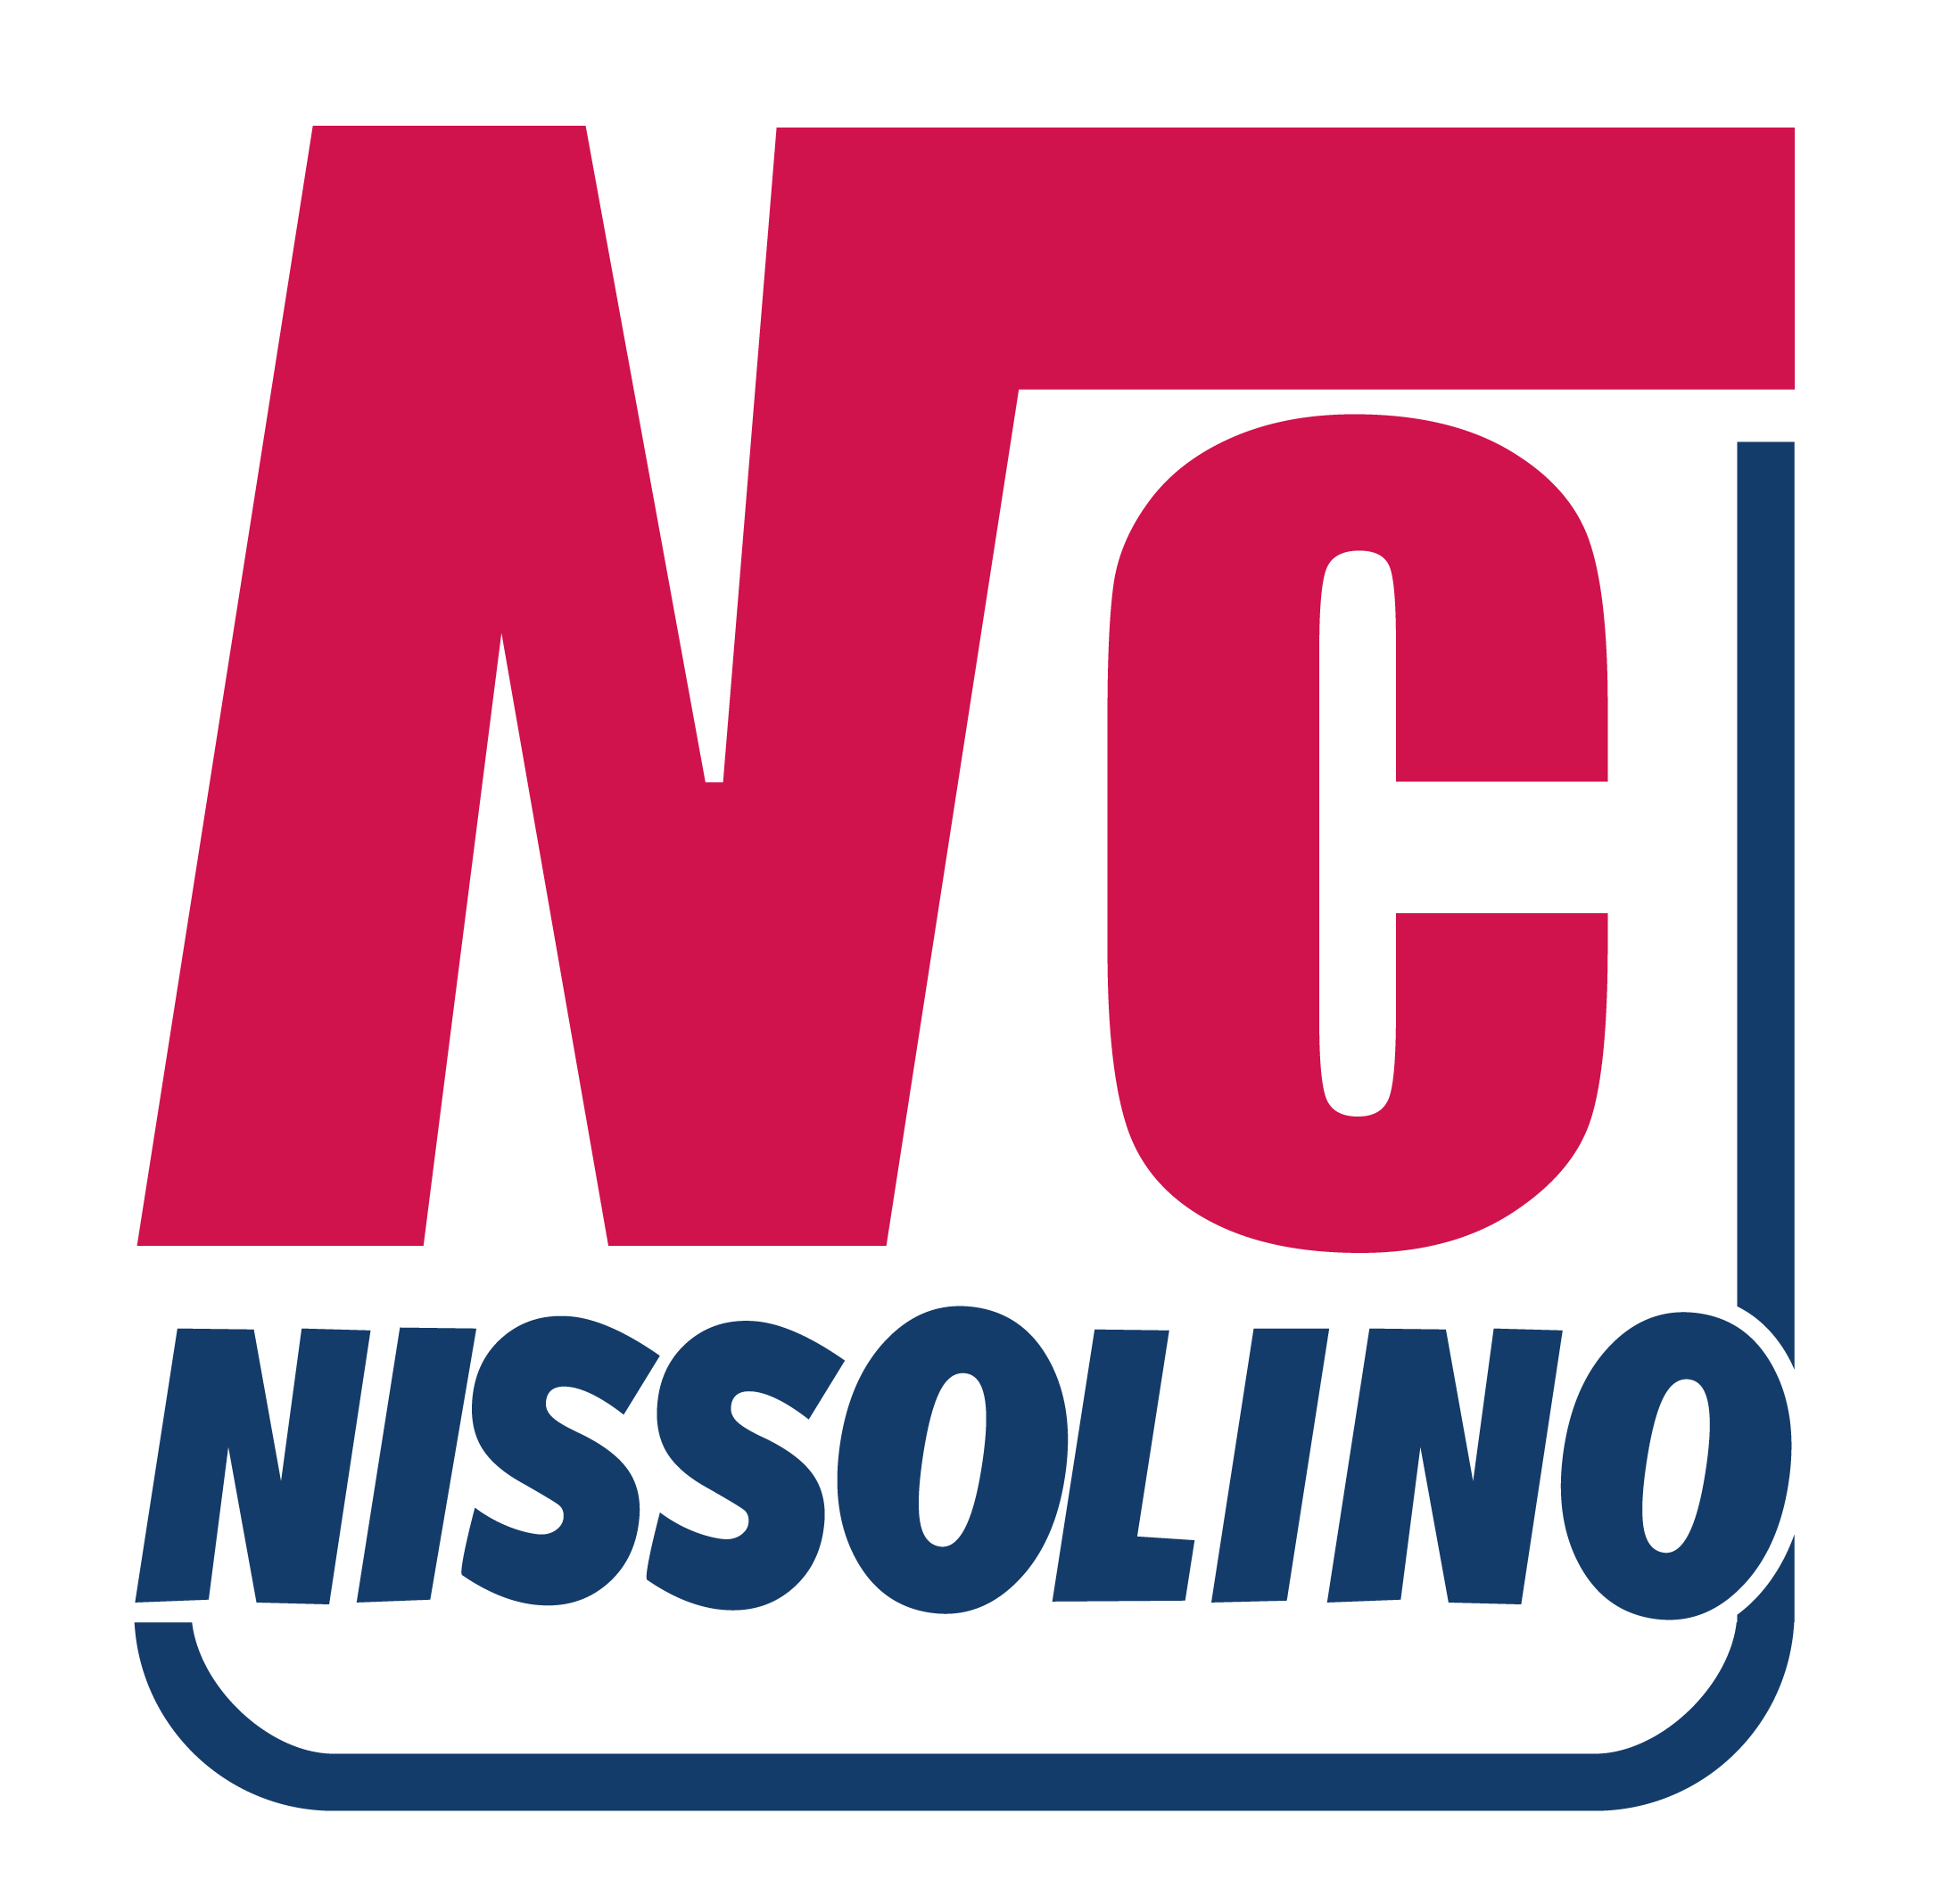 Nissolino Corsi Logo Cropped